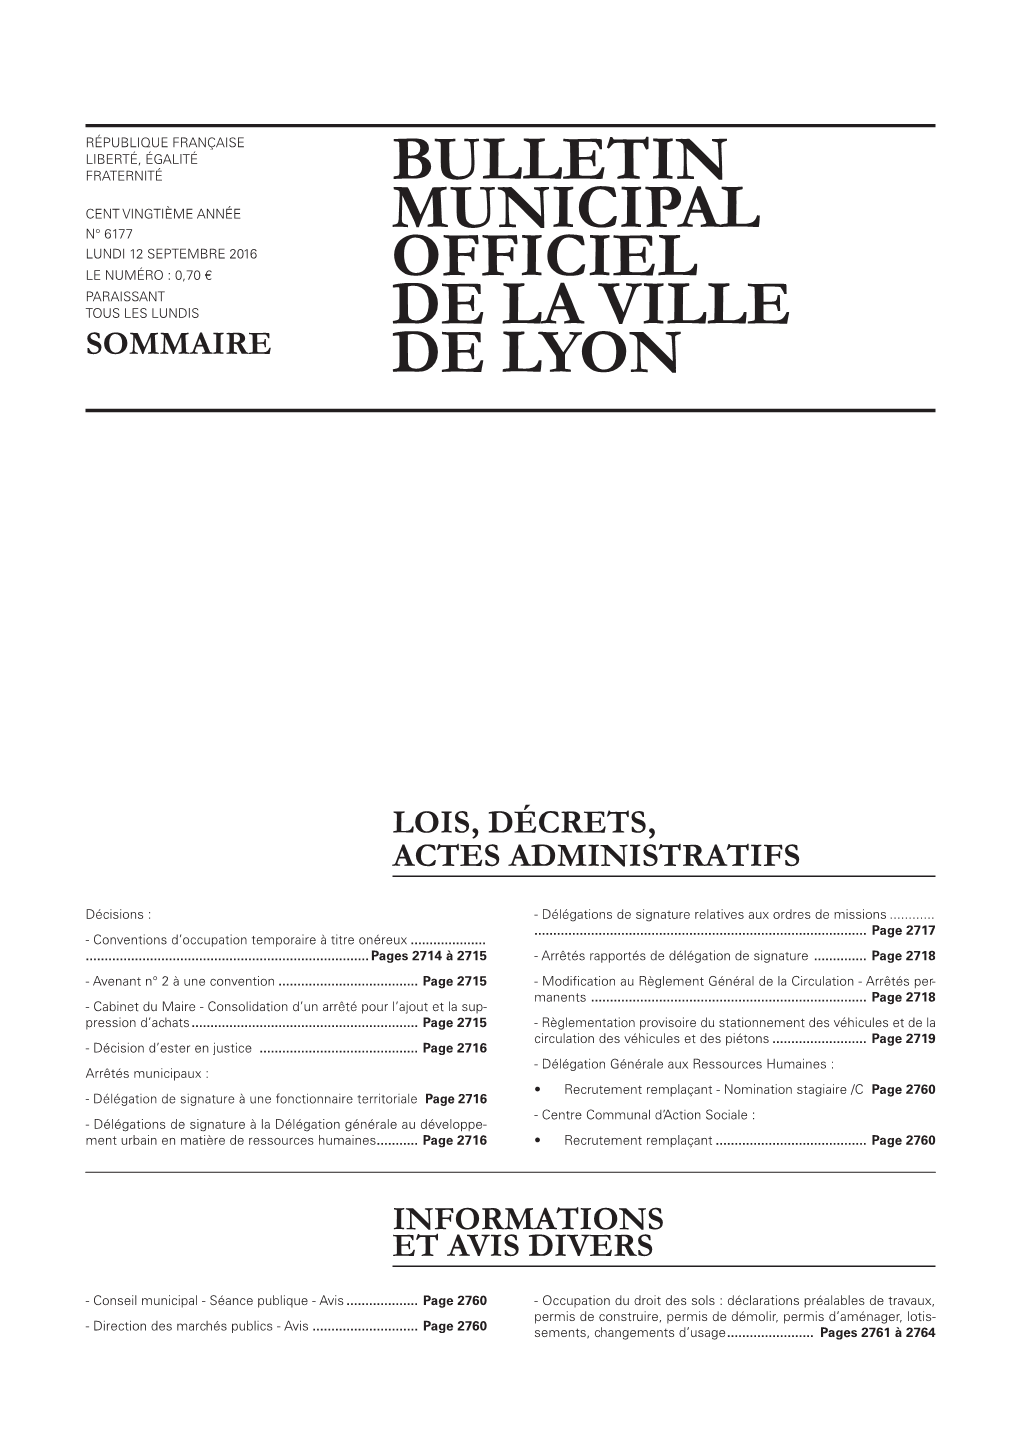 Sommaire Bulletin Municipal Officiel De La Ville De